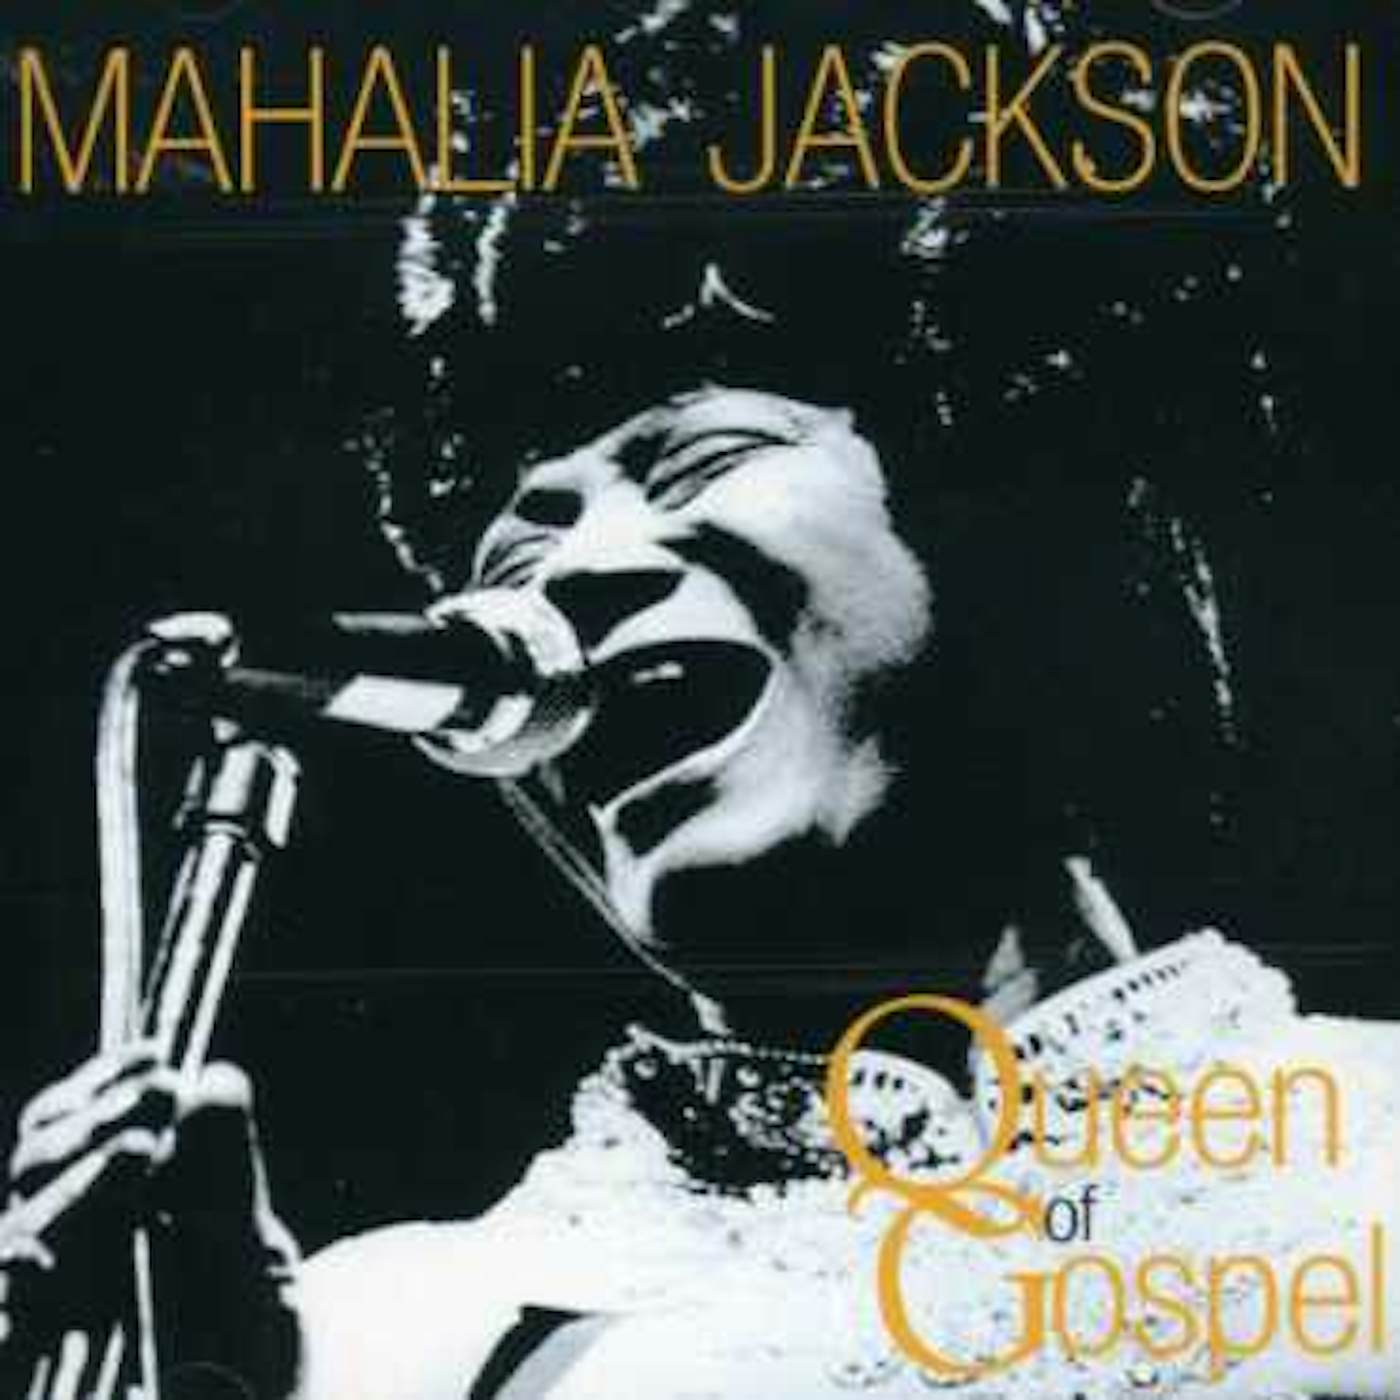 Mahalia Jackson QUEEN OF GOSPEL CD